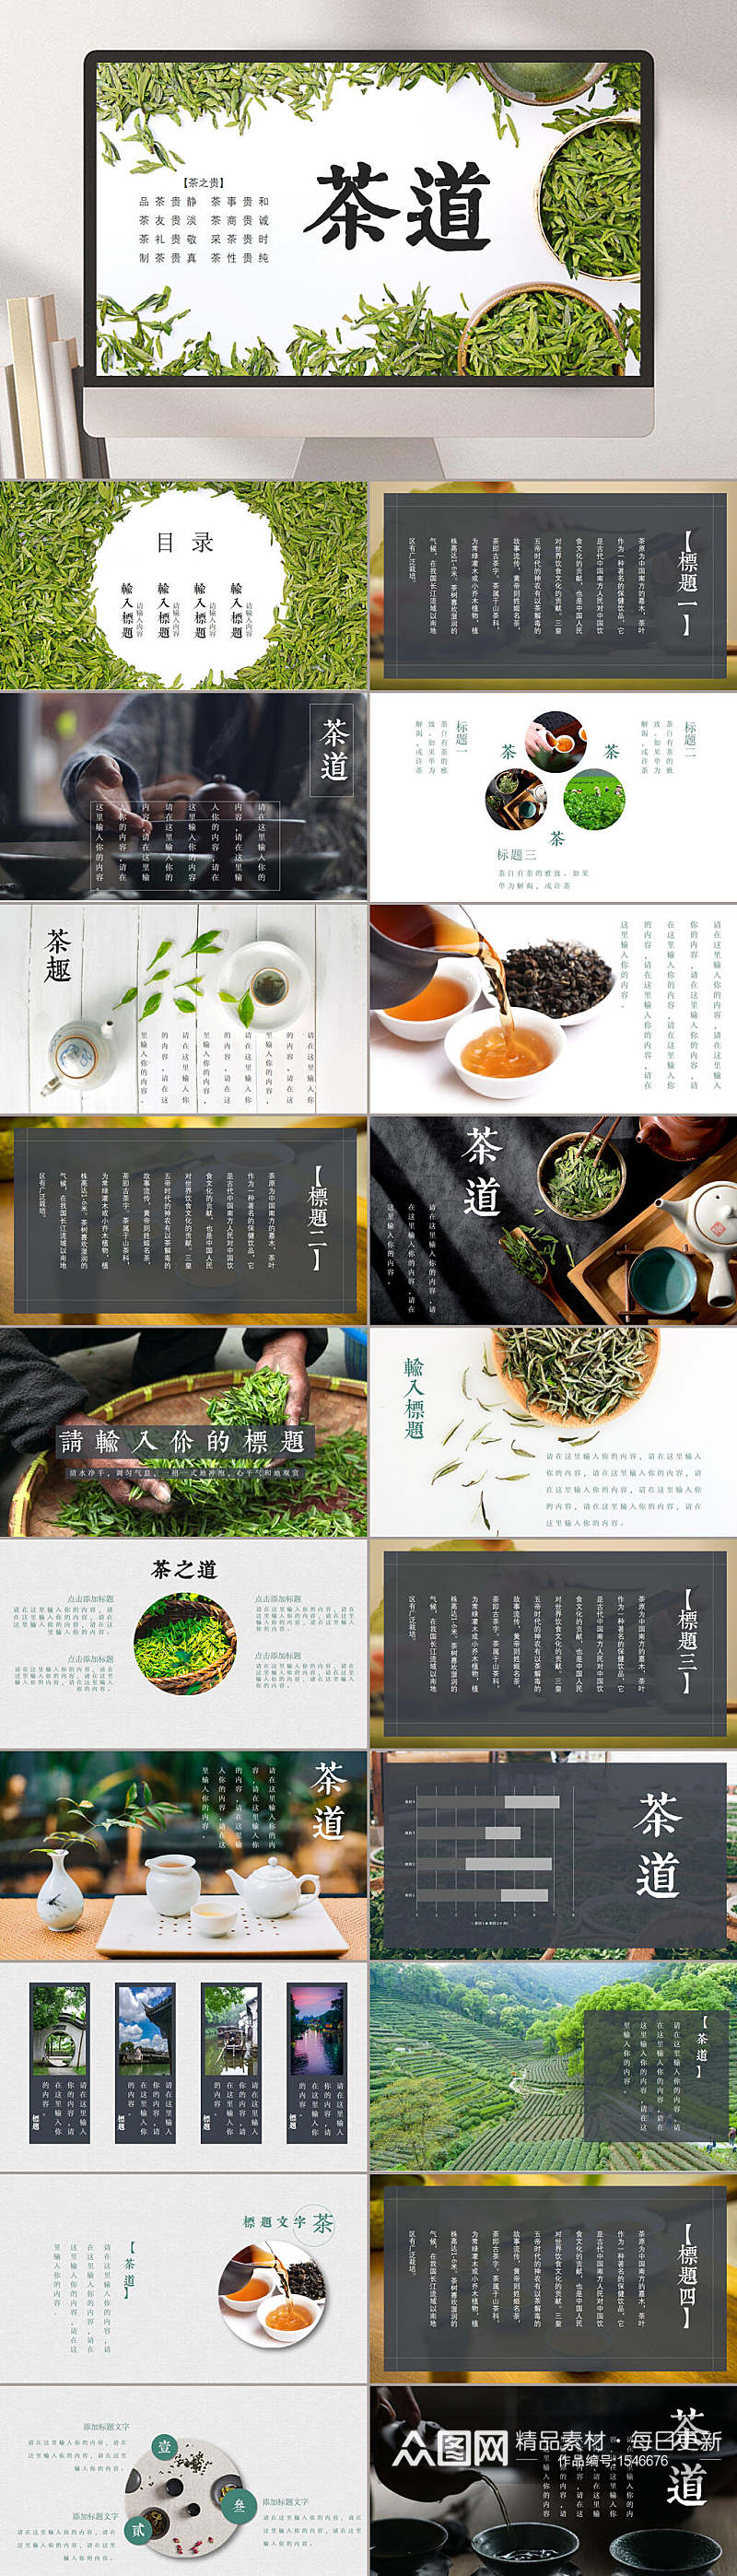 茶道中国传统文化茶PPT模板素材